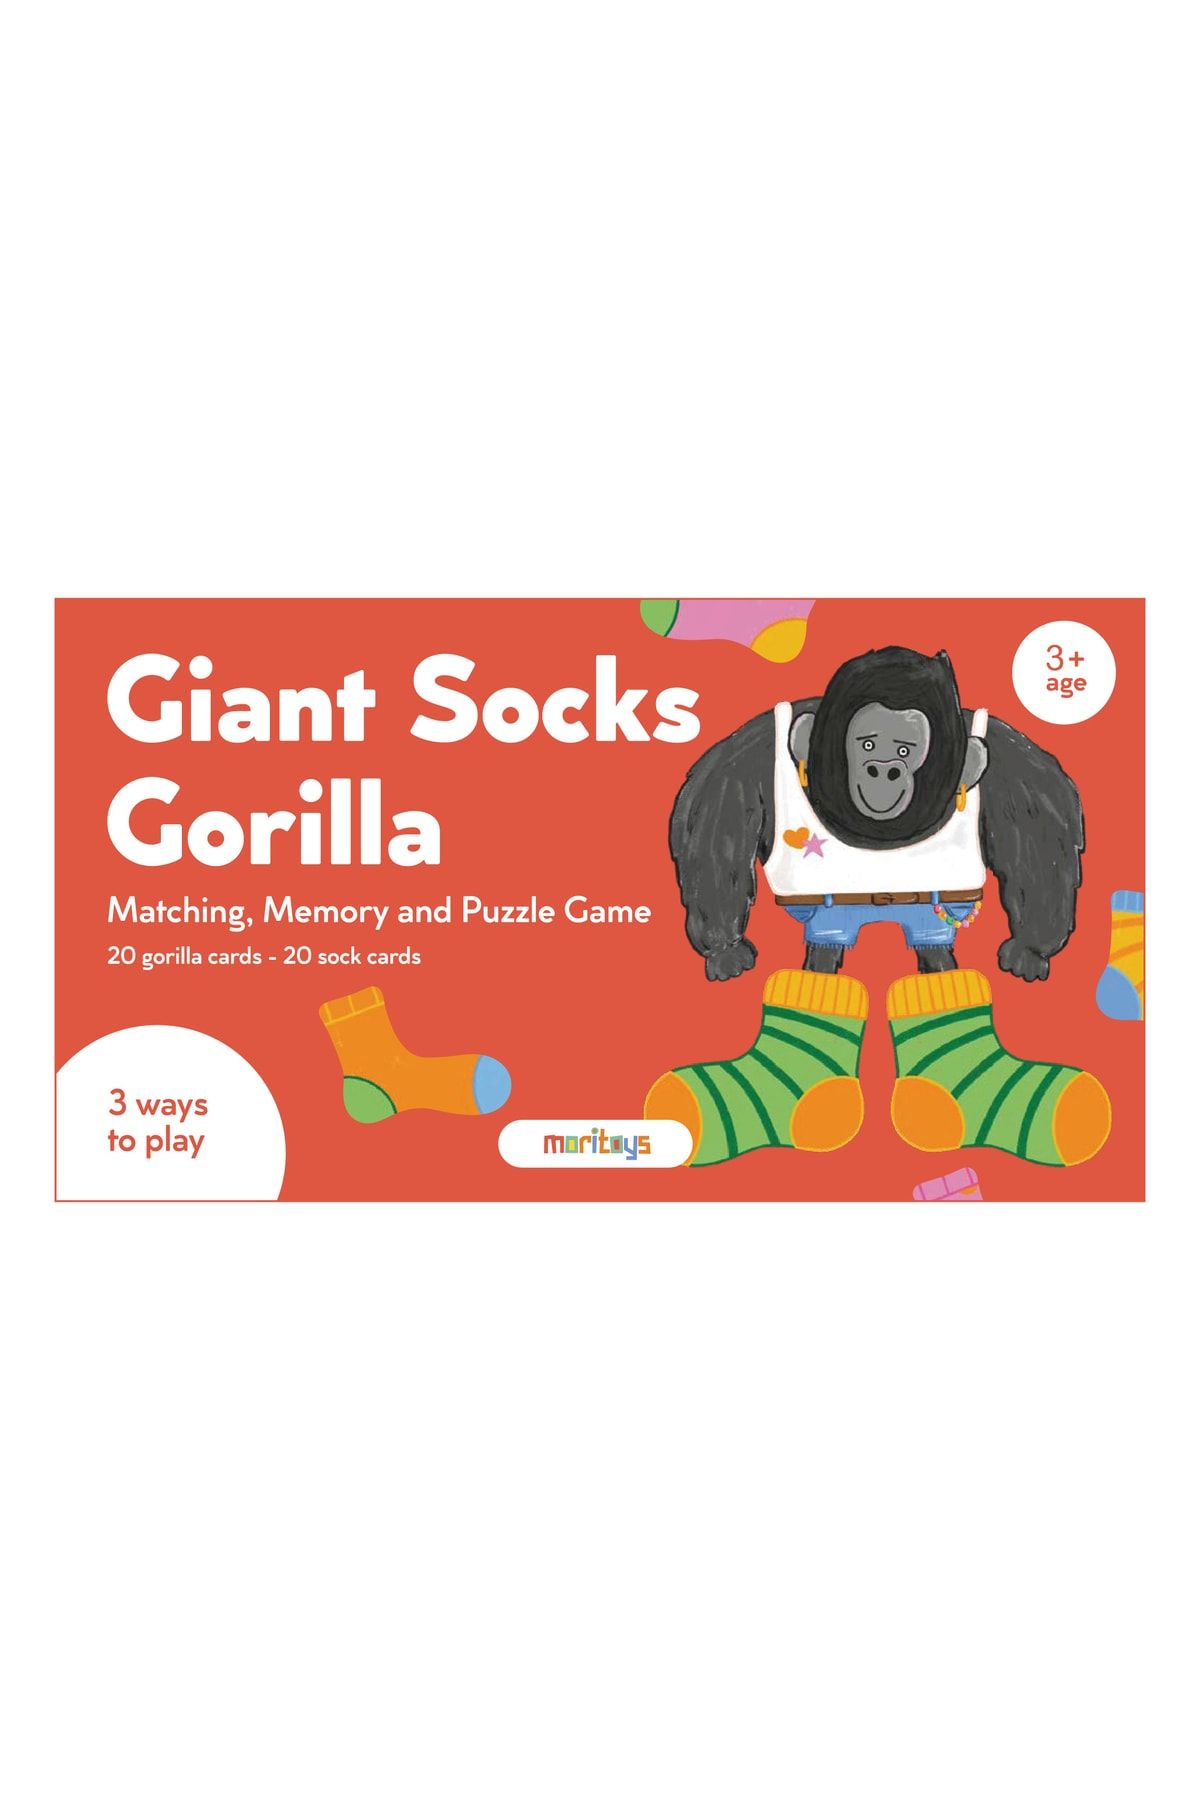 Genel Markalar Giant Socks Gorilla: 40 Kartlı Hafıza, Eşleştirme Ve Puzzle Oyunu